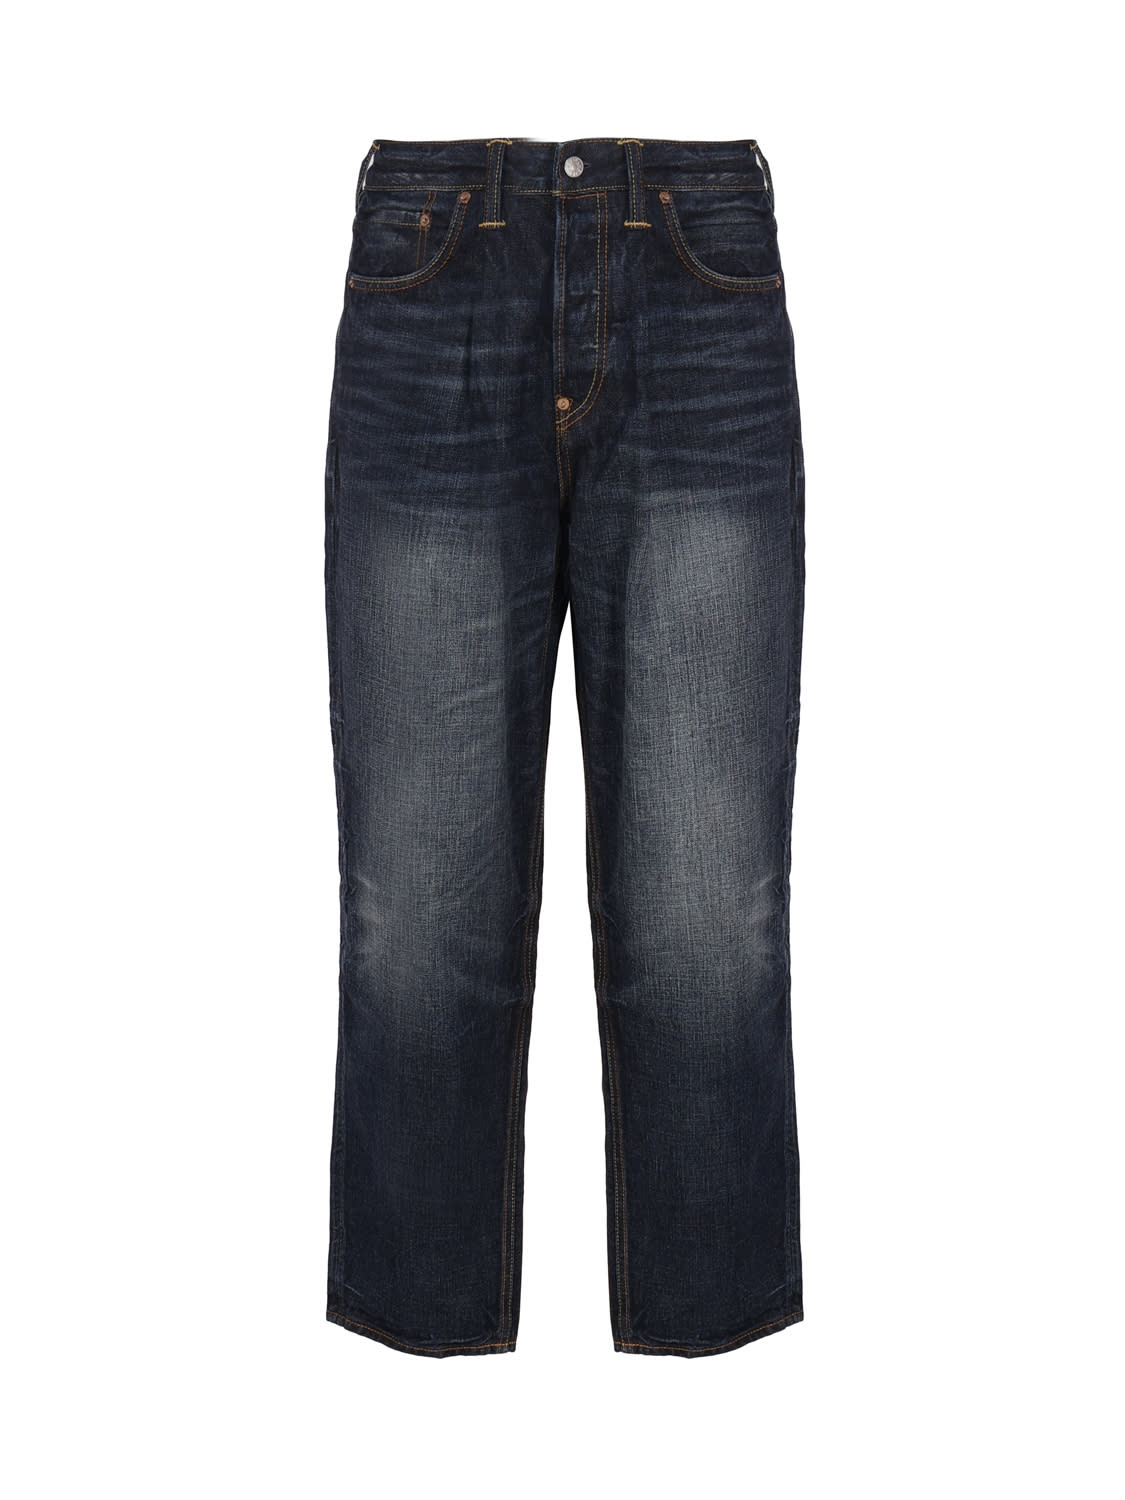 Evisu Cotton Denim Jeans In Dark Wash